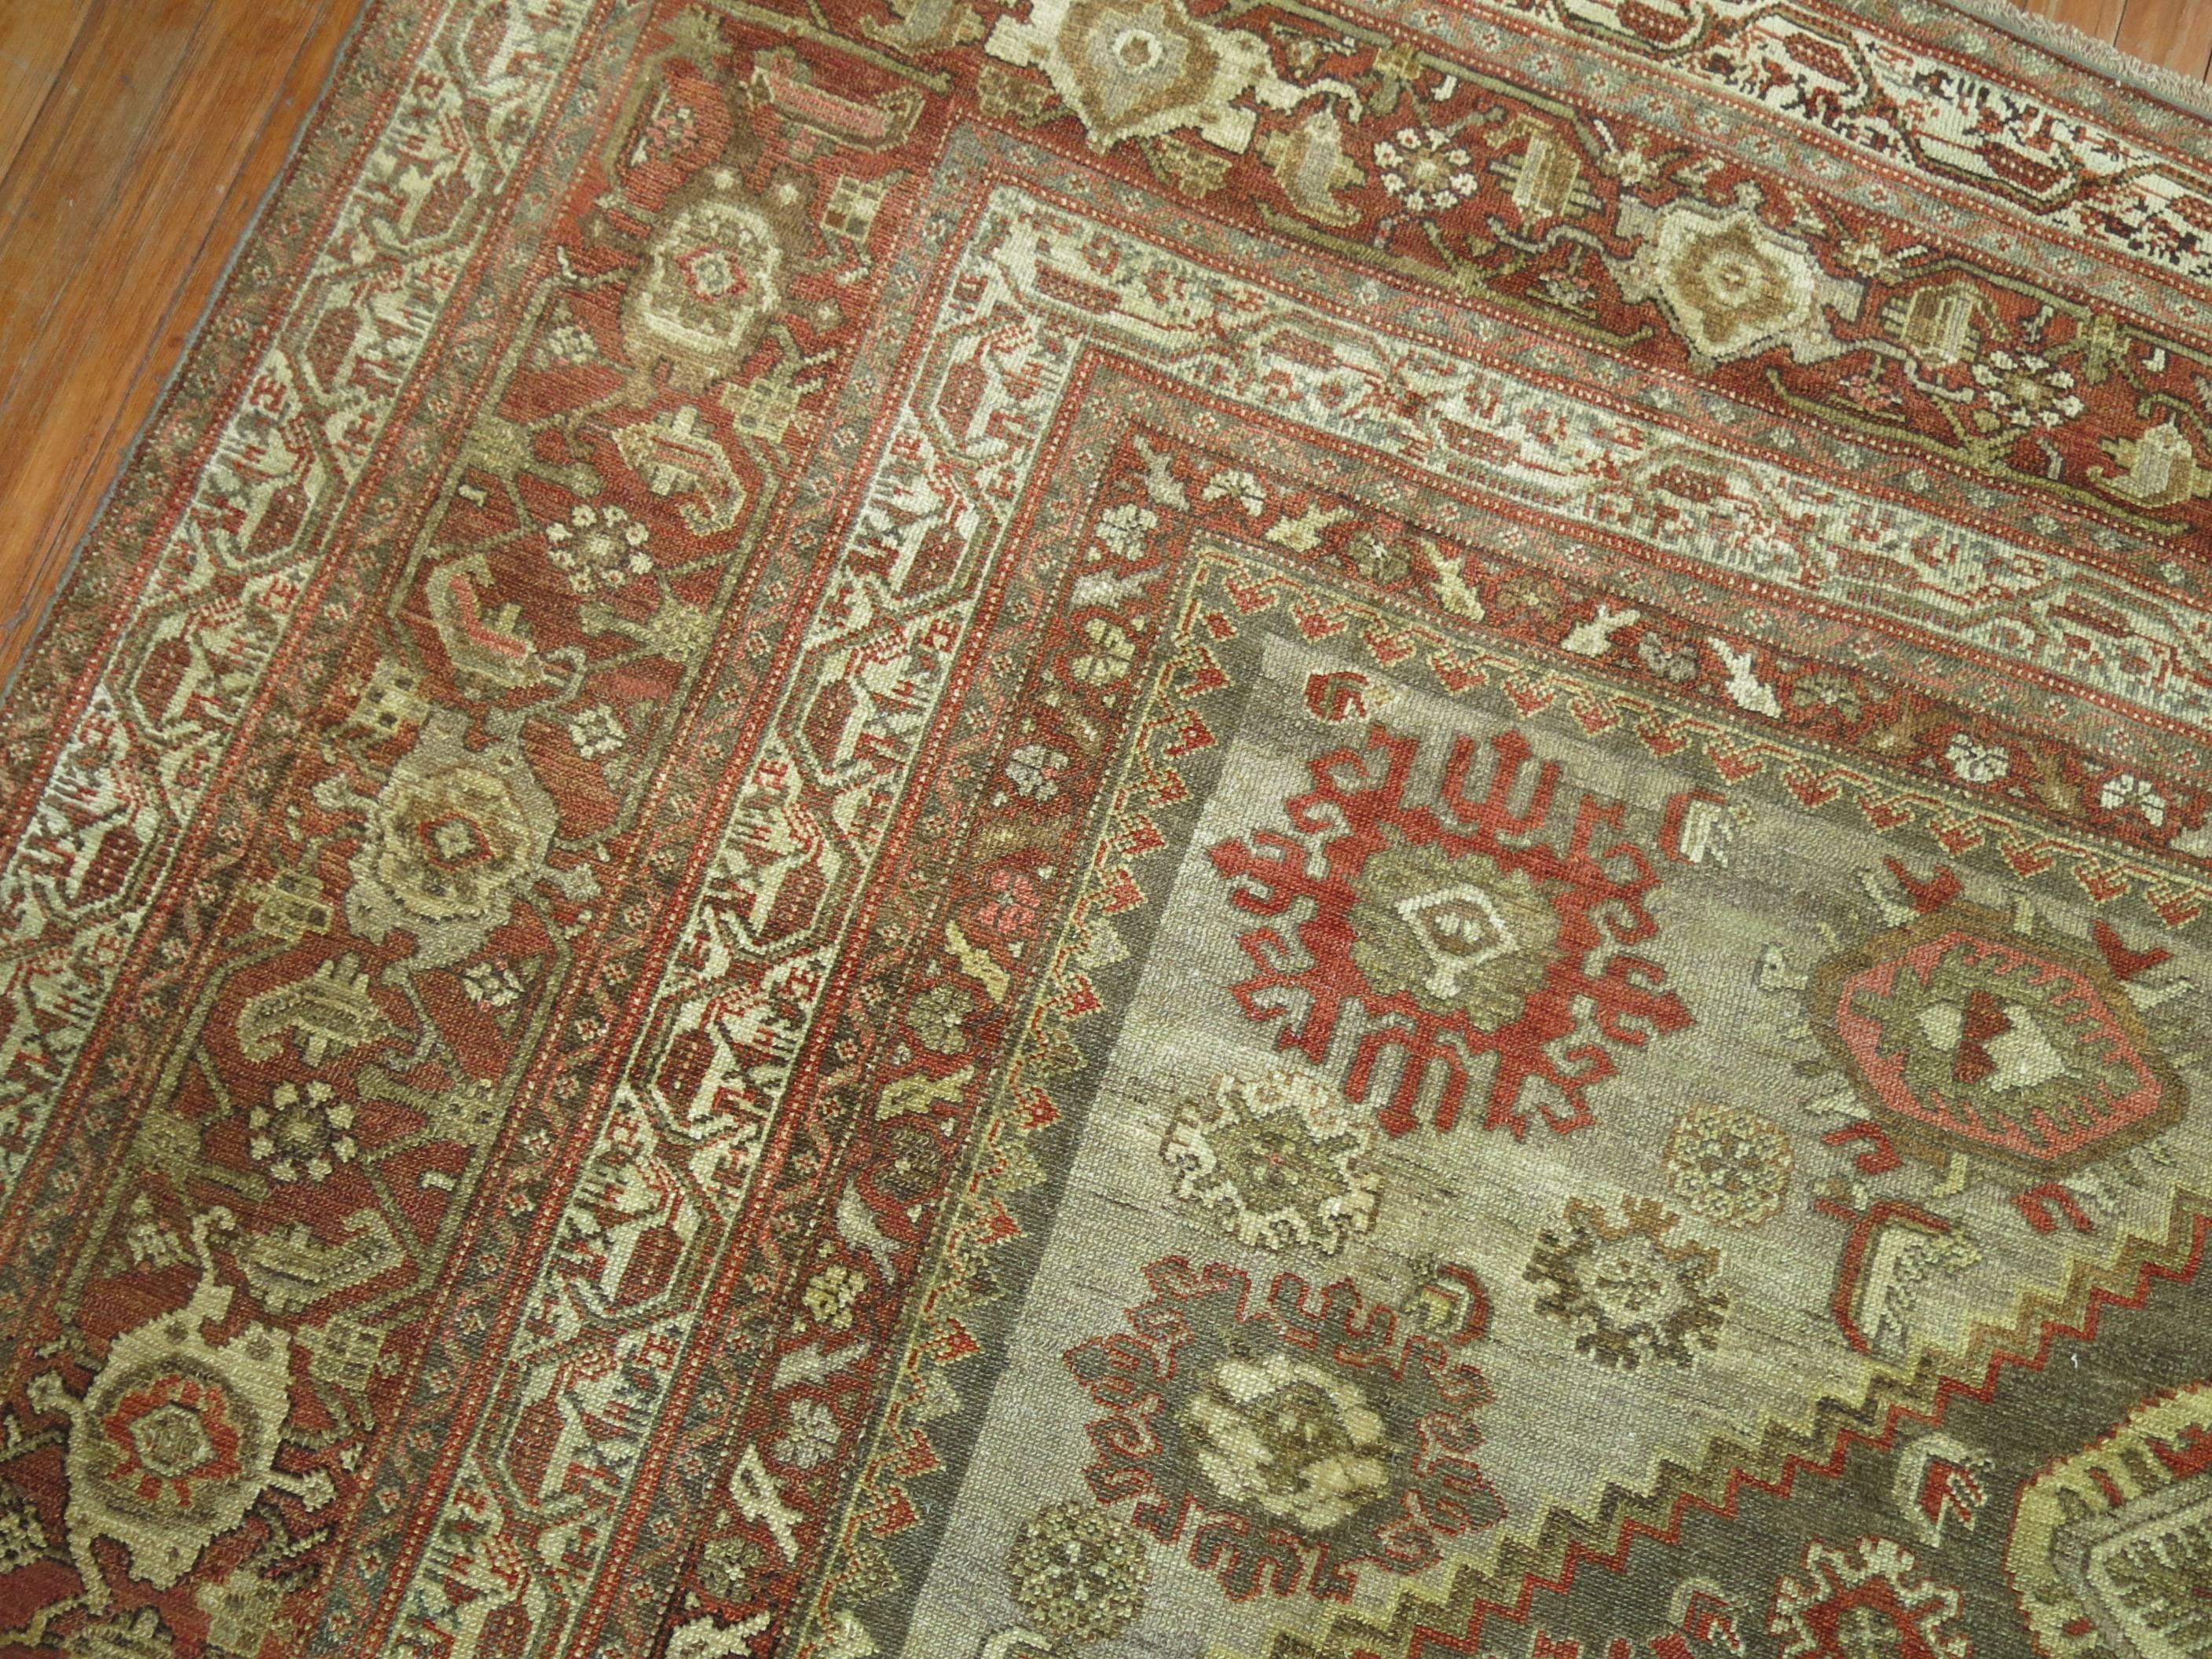 Antique Persian Malayer Decorative Carpet in  Predominant Silver Color 1